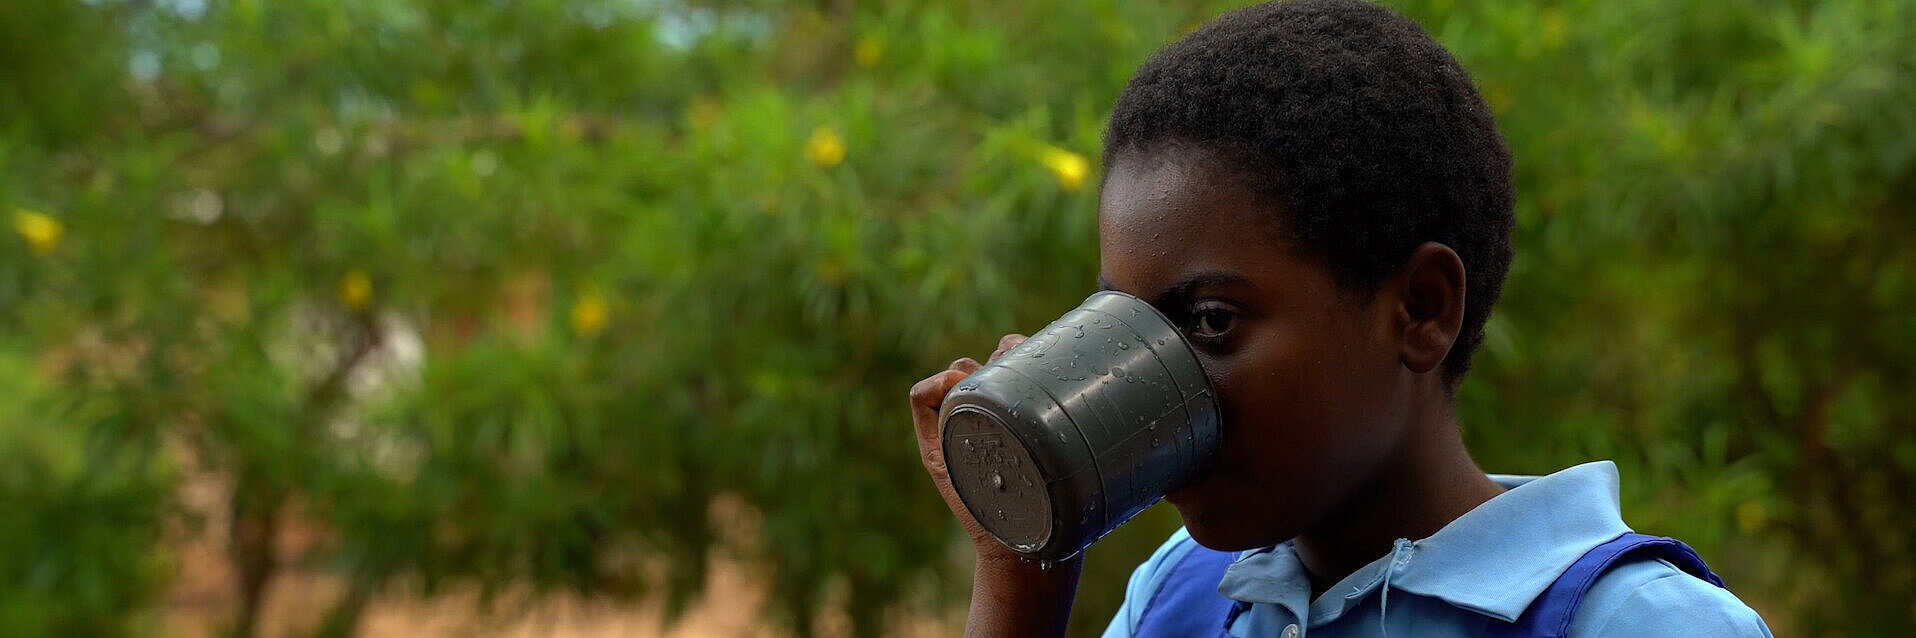 Peace aus Malawi trinkt Wasser aus einem Edelstahlbecher